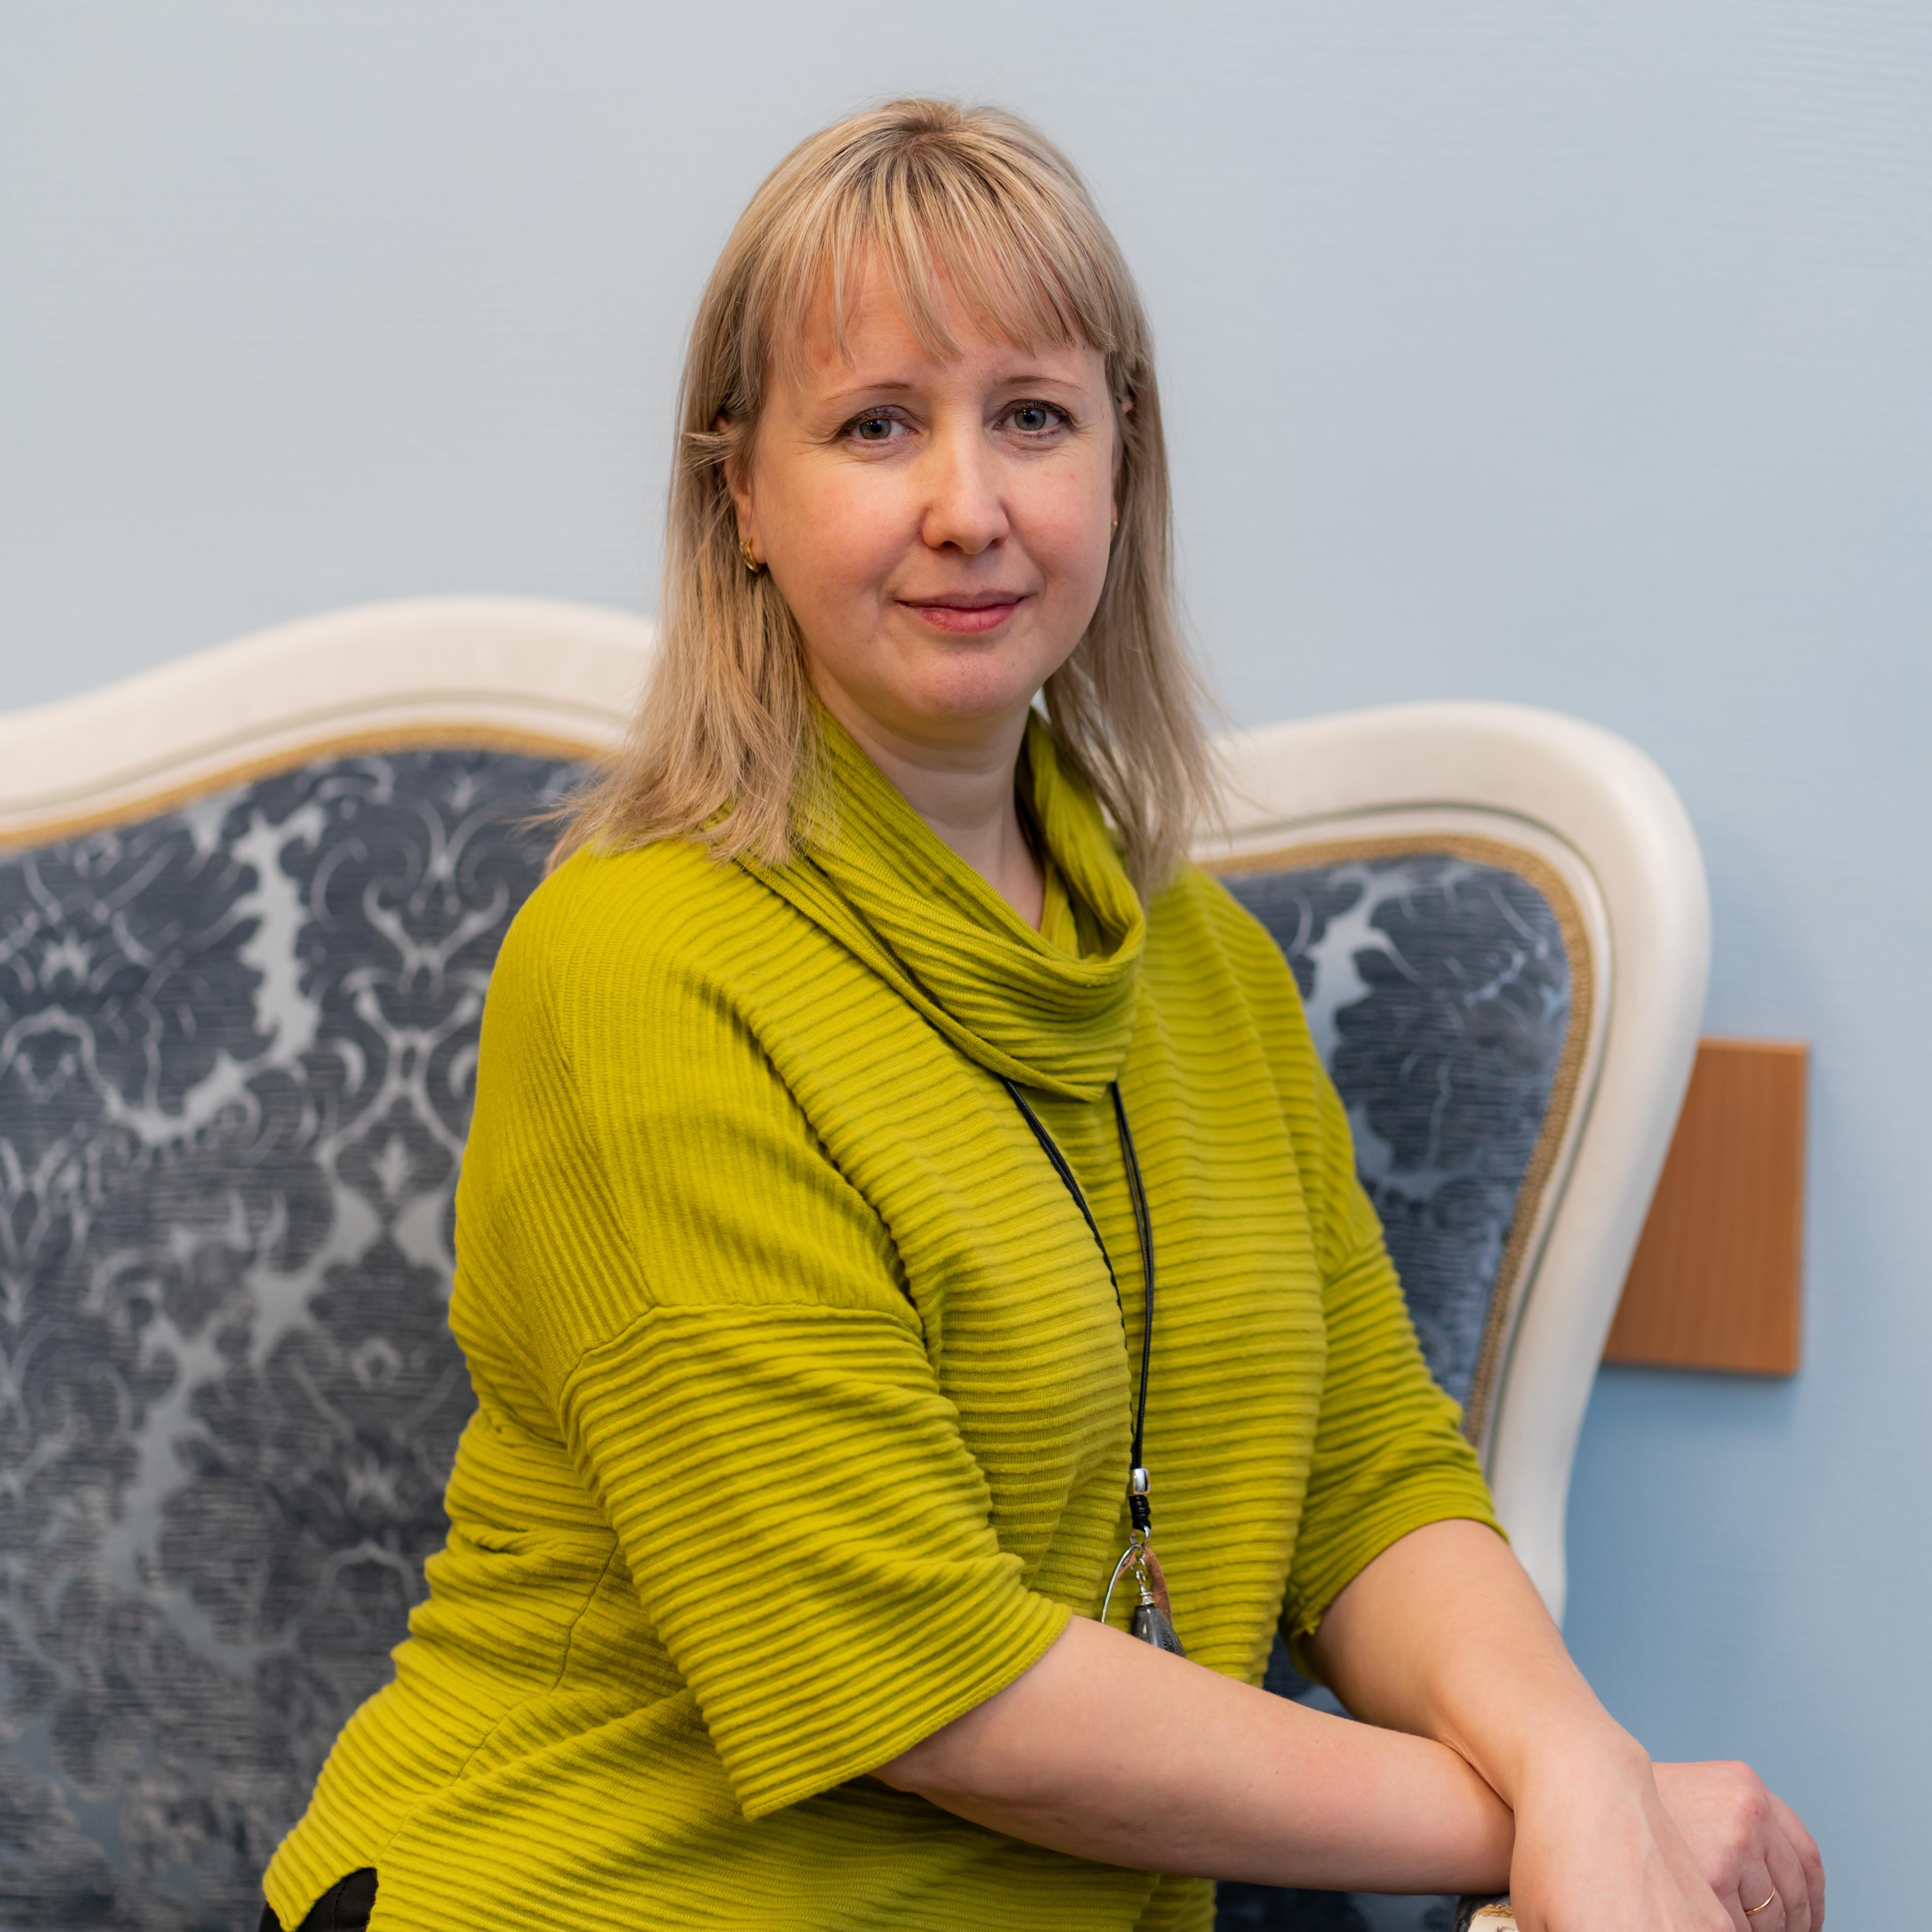 Natalia Loimoeva, "Comprehensive Center for Social Services of the Republic of Karelia"